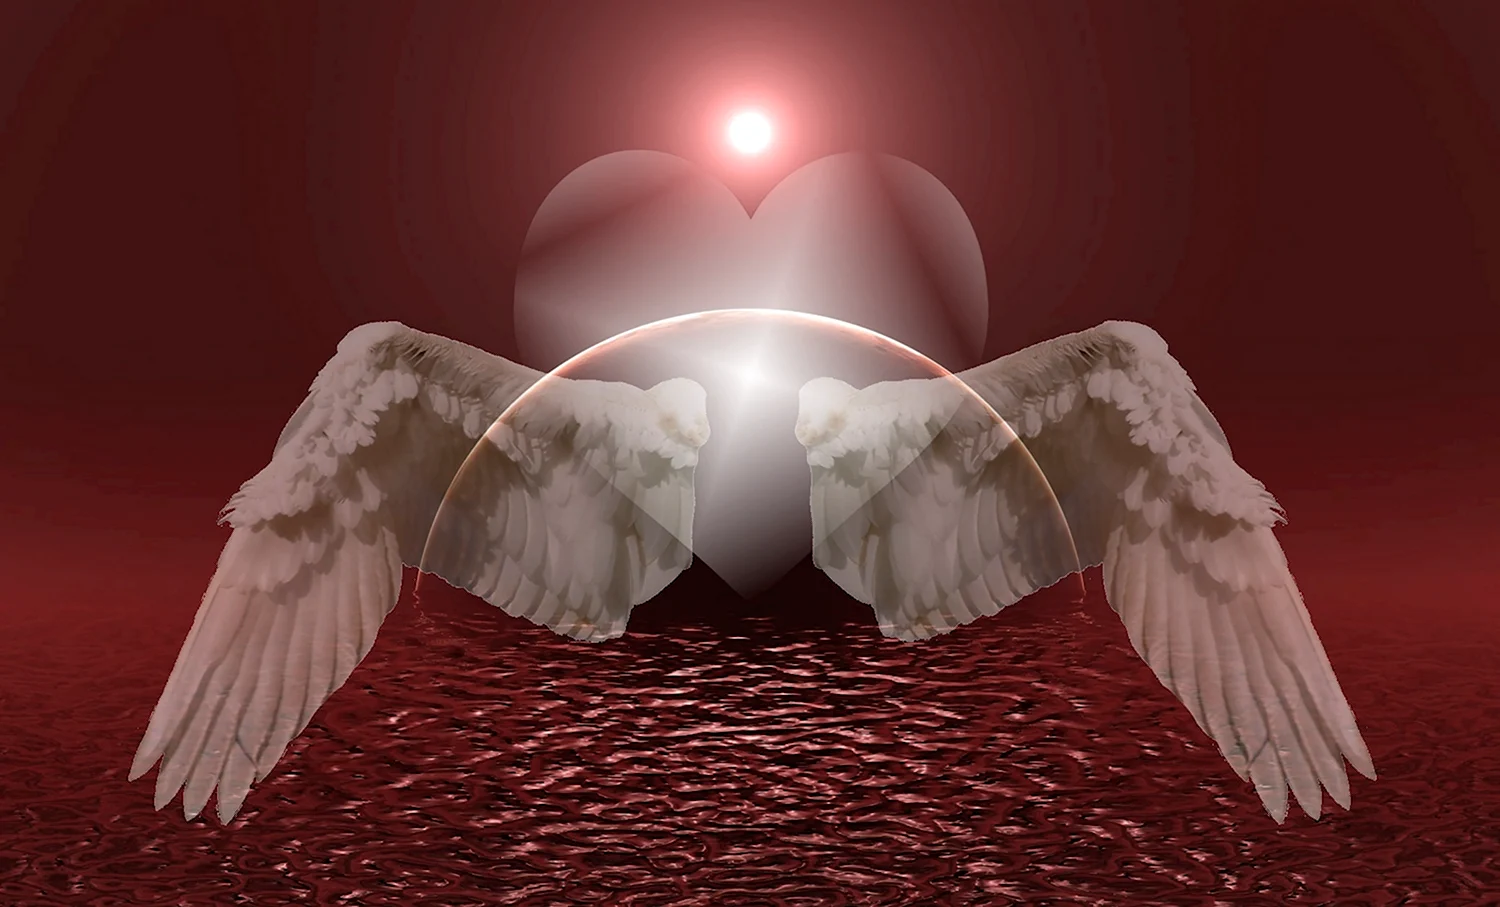 Ангельское сердце